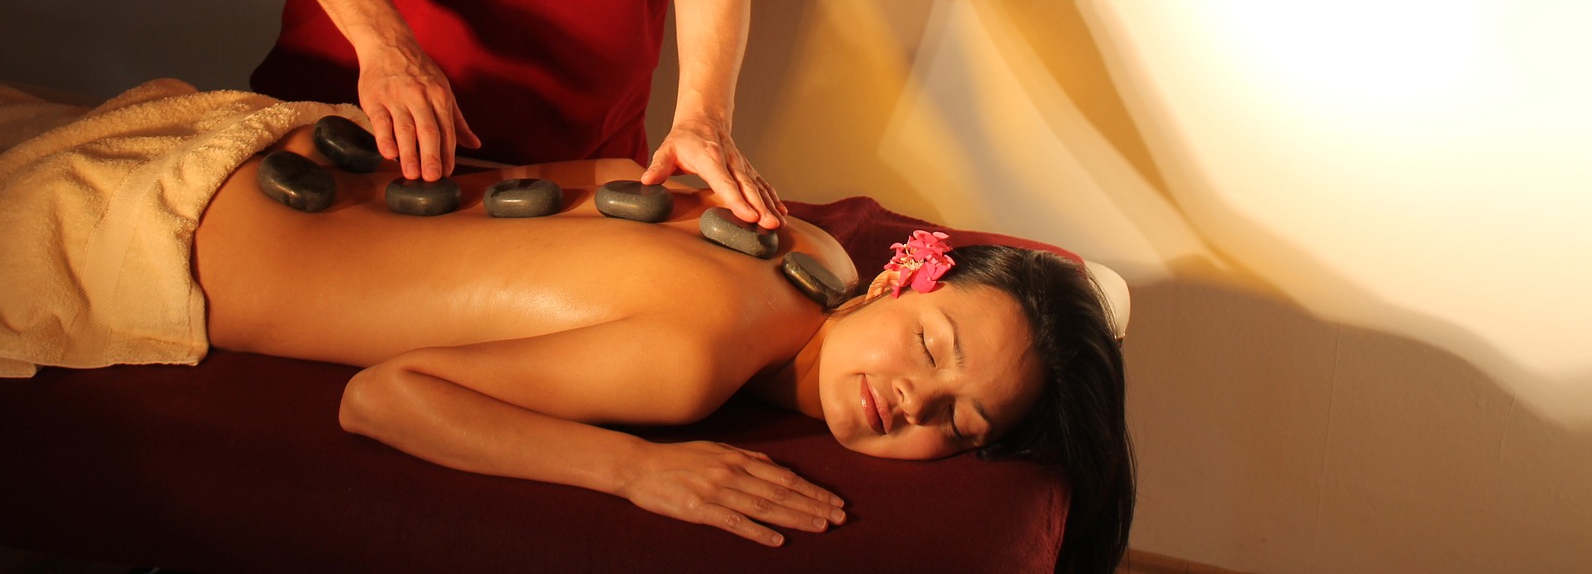 masaż nie tylko relaksuje, ale i leczy